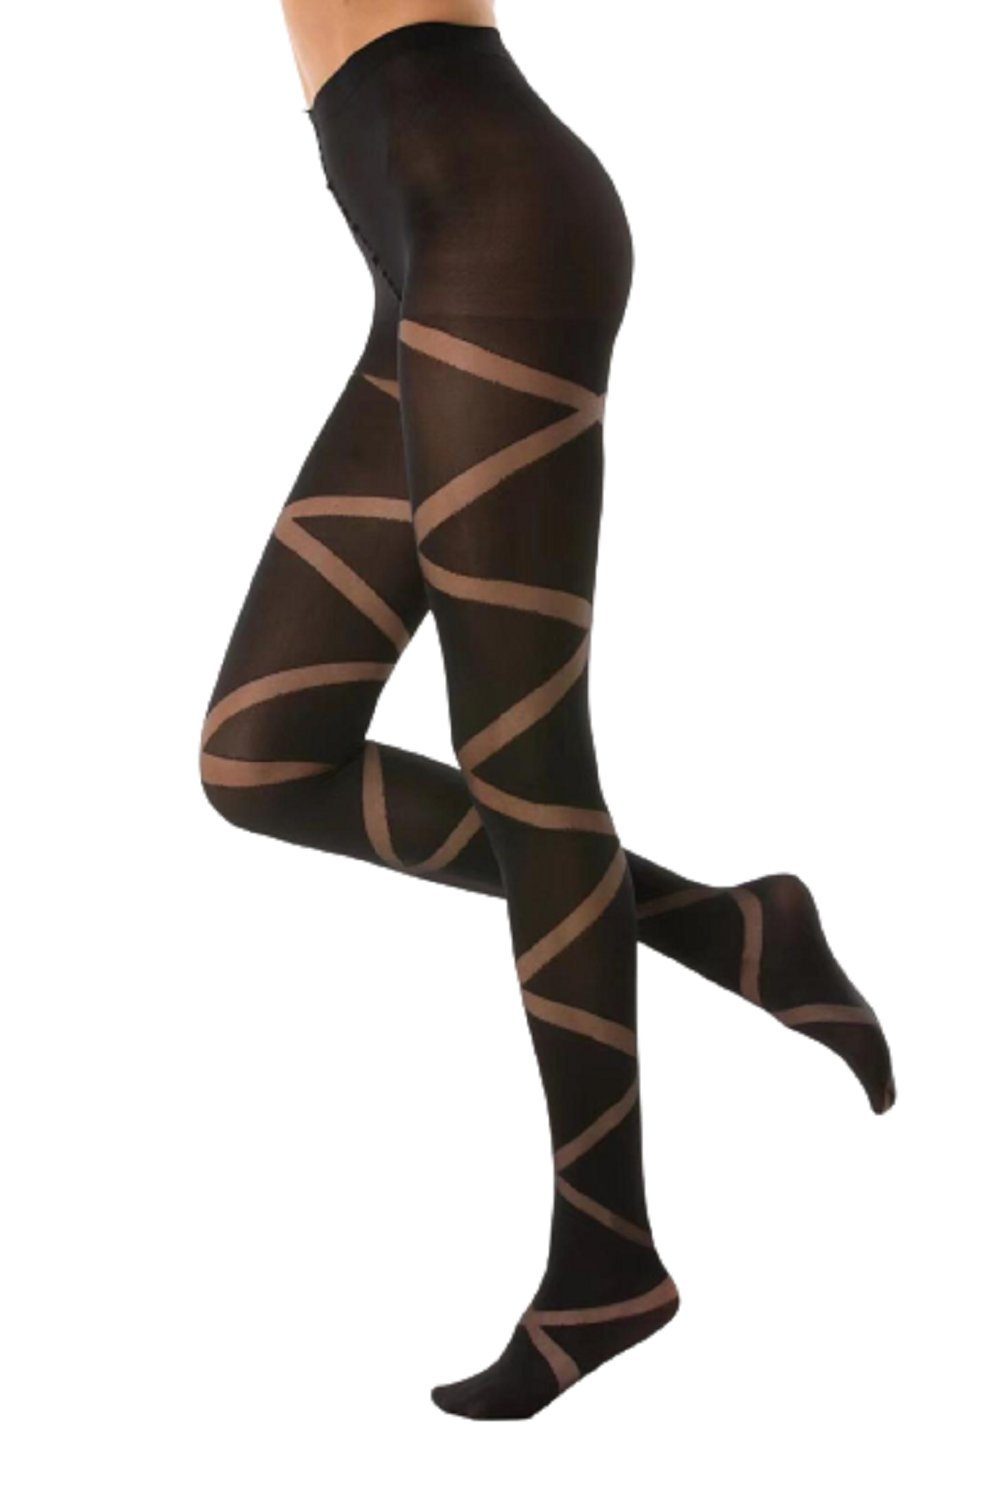 cofi1453 Feinstrumpfhose »Damen Strumpfhose mit Muster N.1587 Muster  Streifen Nero Frauen Hose Socken 80 DEN schwarz« online kaufen | OTTO